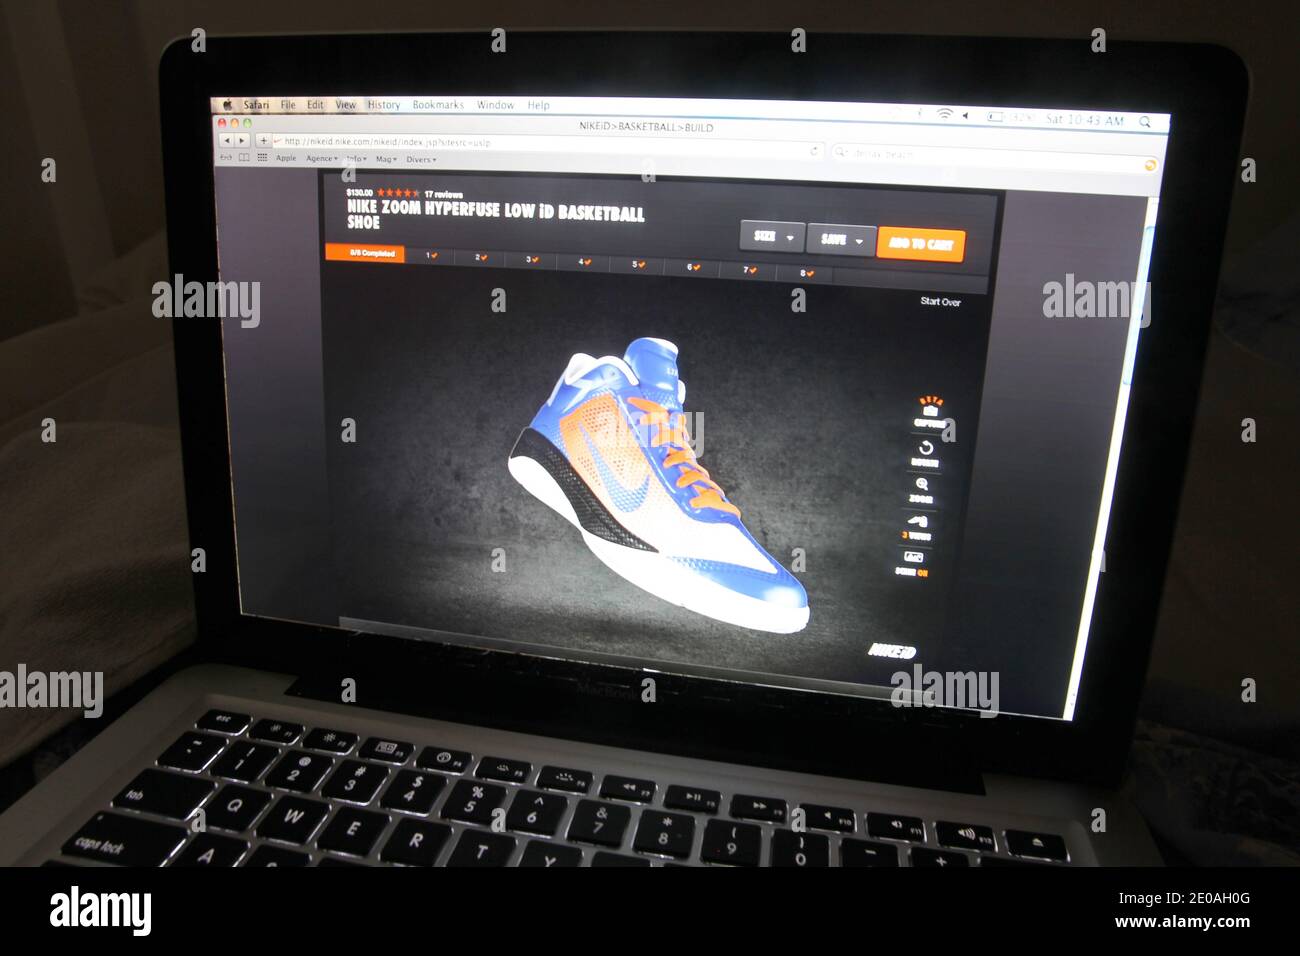 Nike inc. a vender en su sitio web zapatillas baloncesto Nike Zoom Hyperfuse diseñadas especialmente para los neoyorquinos Jeremy Lin durante el fin de semana en el que